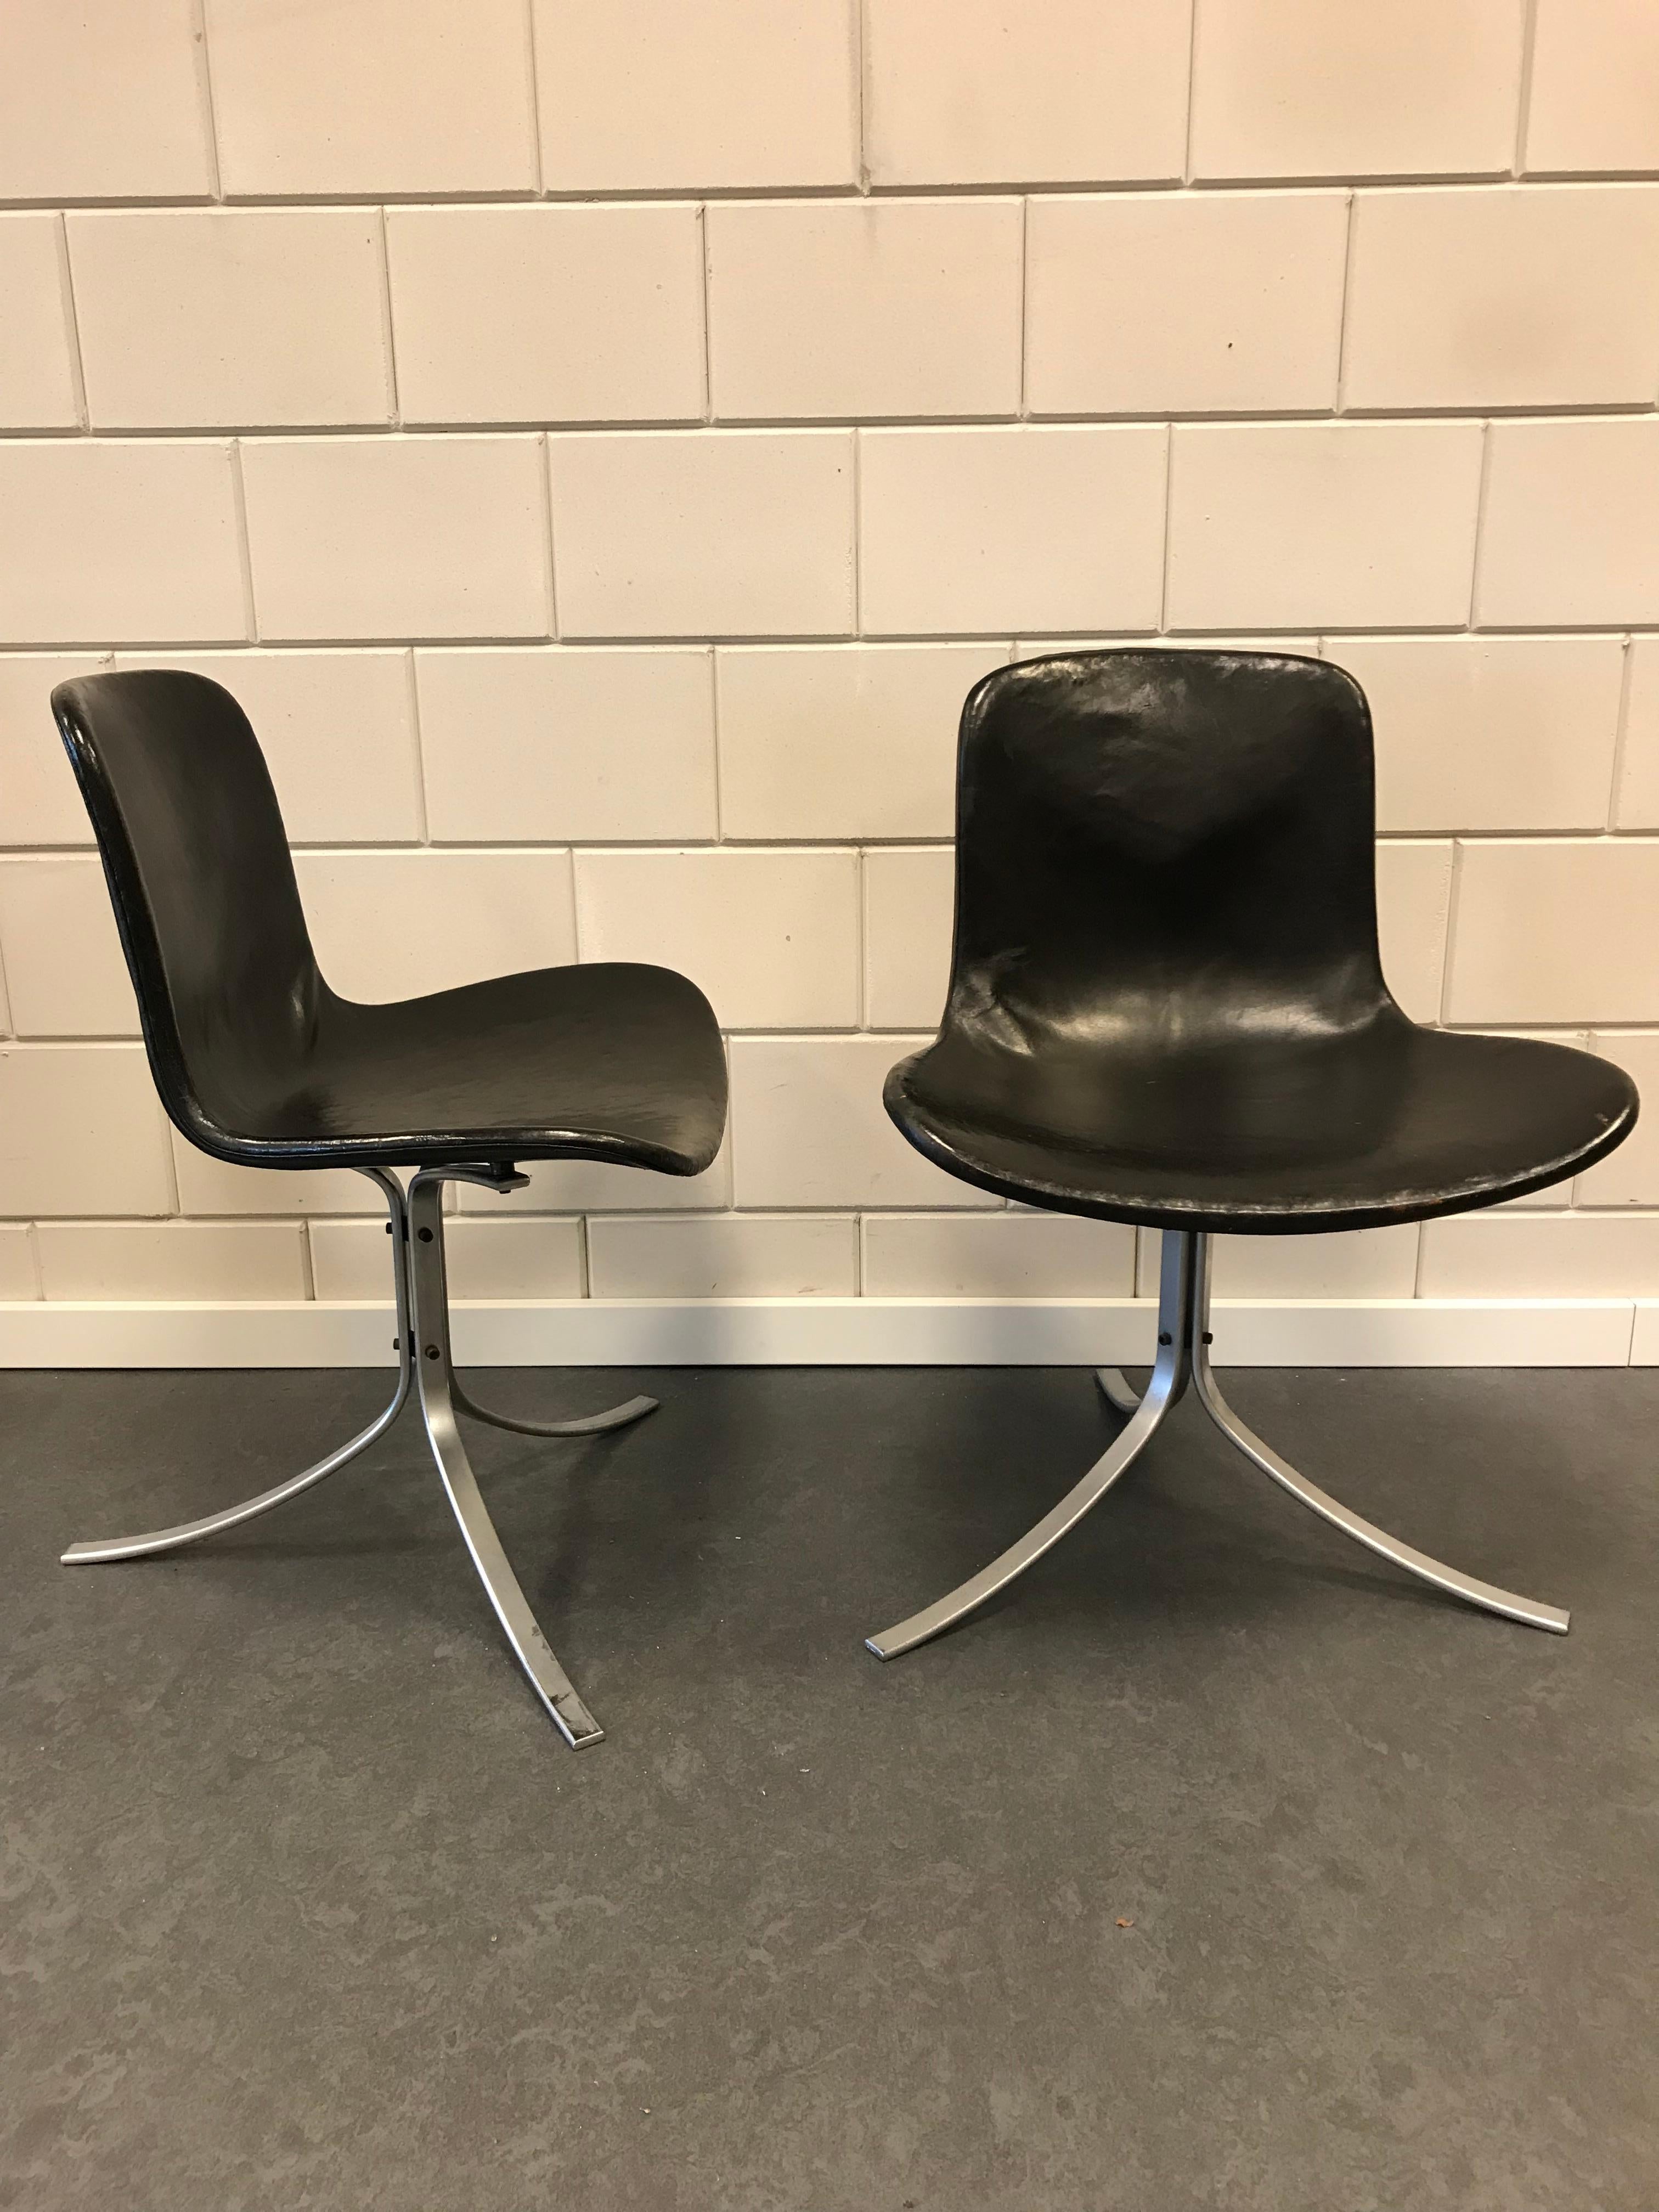 Deux chaises de salle à manger PK9 en cuir noir, design 1961 de Poul Kjaerholm pour Kold Christensen
les chaises sont en bon état.